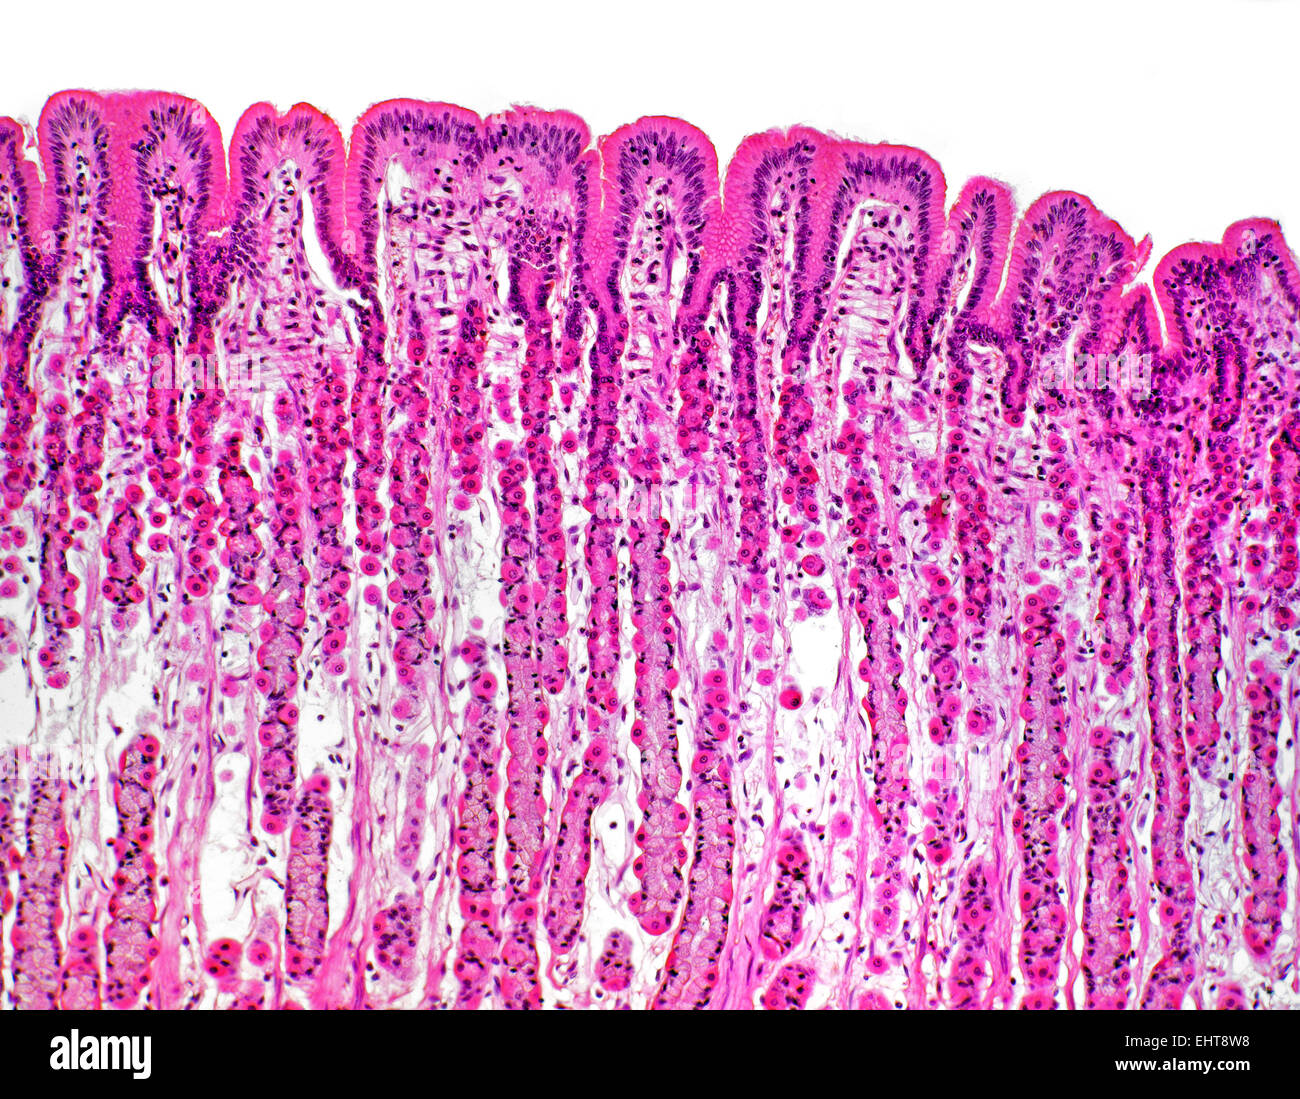 Linguetta di mammifero papille linguali, campo chiaro fotomicrografia, Foto Stock